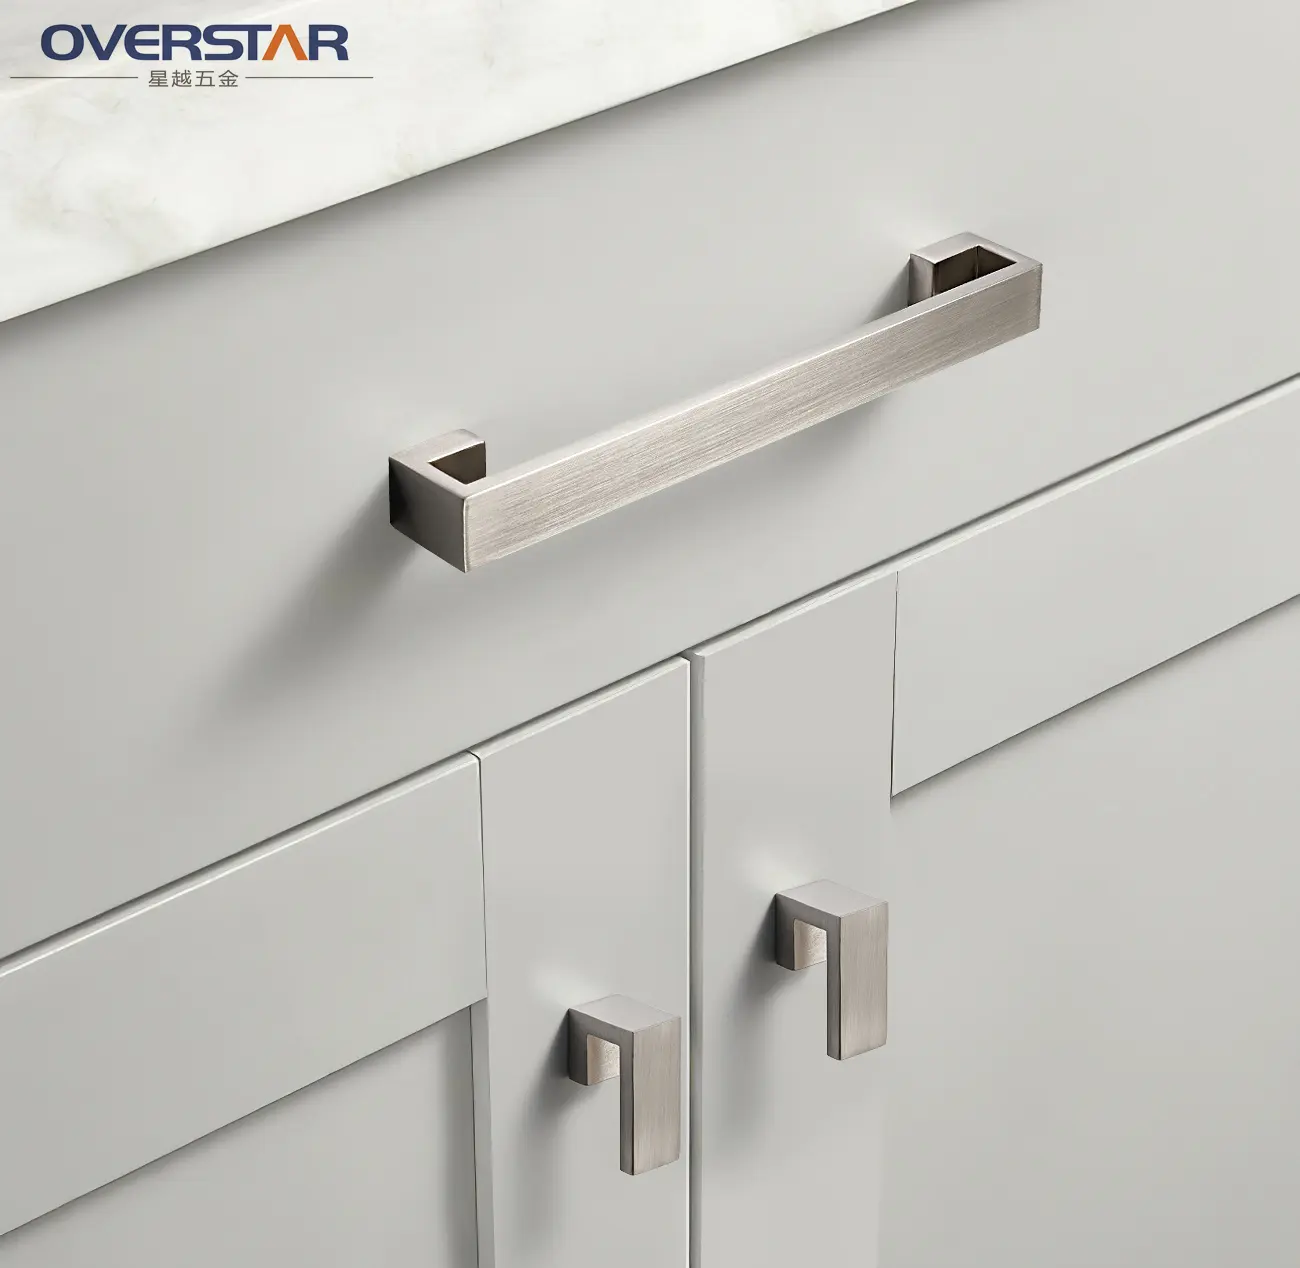 Overstar Zinc alloy Cabinet Door Handle Pulls Knobs Kitchen Drawer Handles for bedroom Cupboard